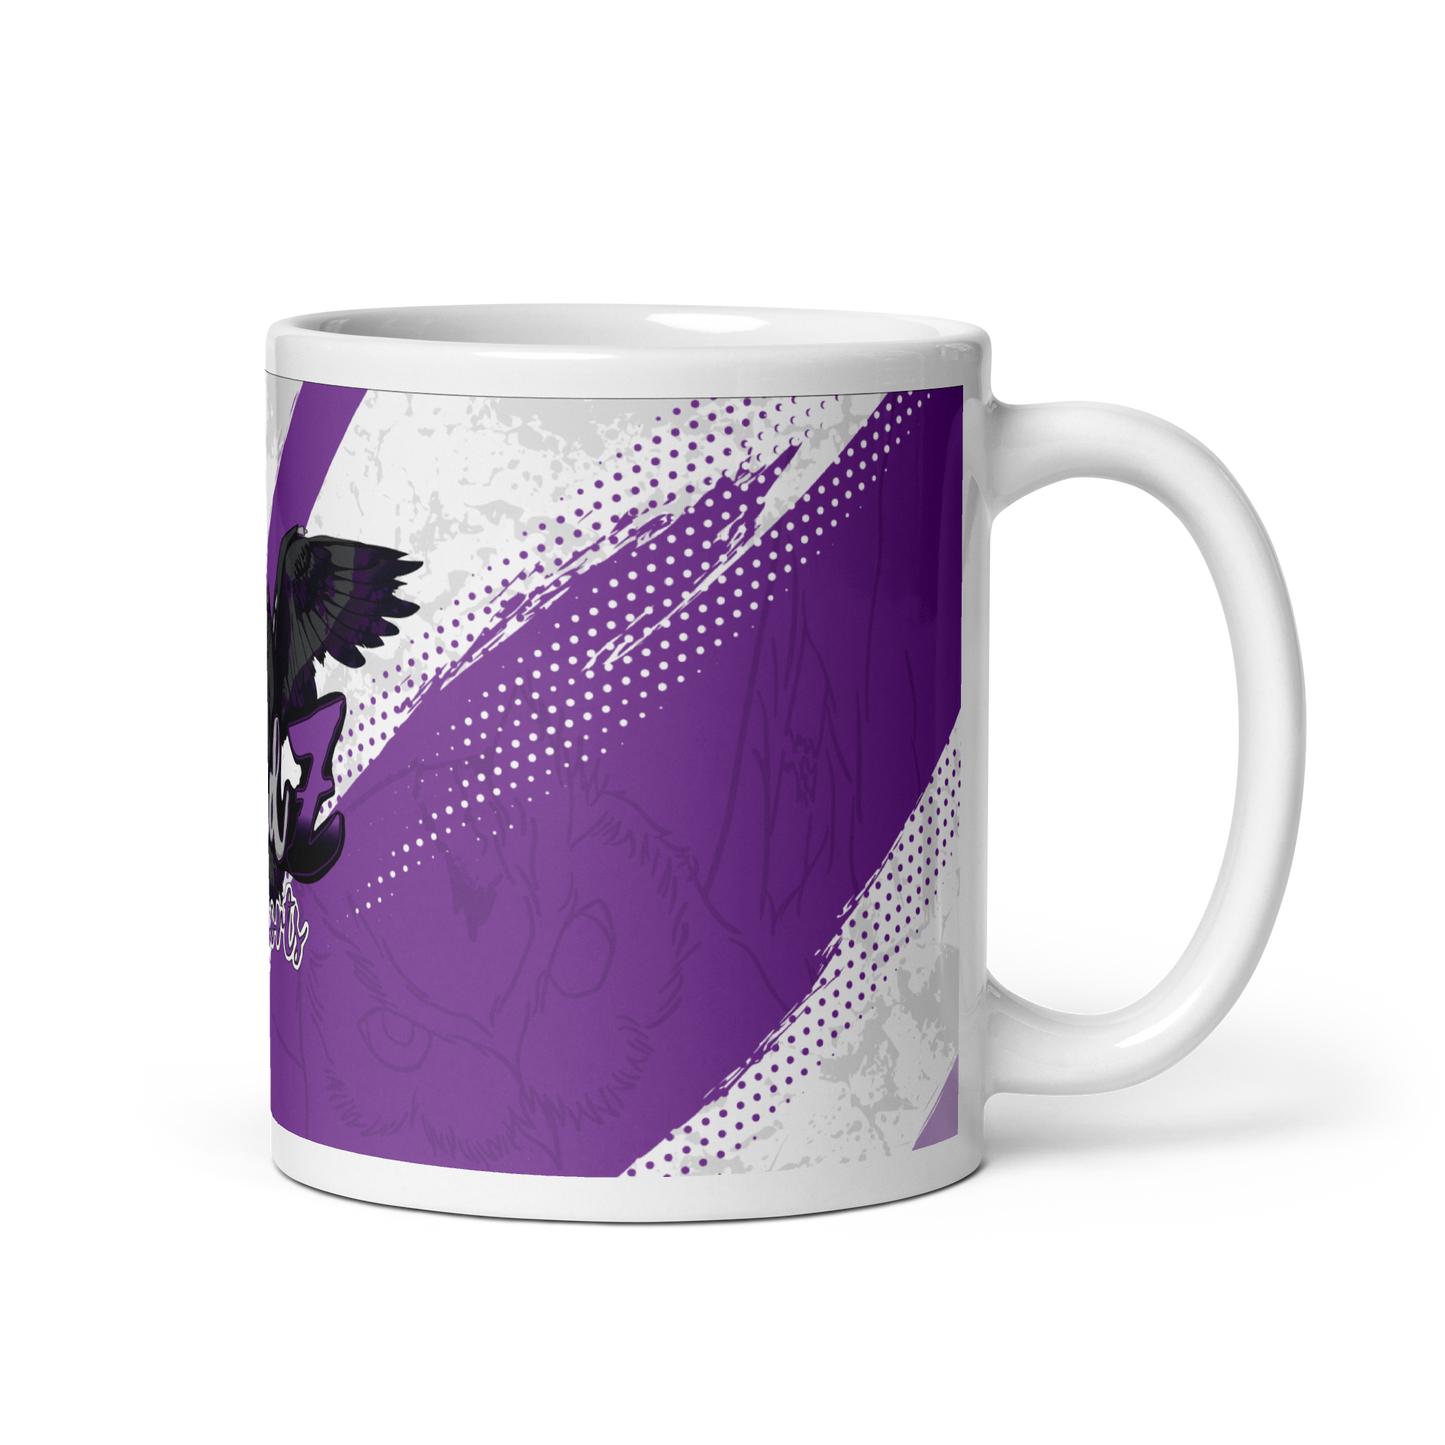 REDZ ESPORTS - Tasse Purple